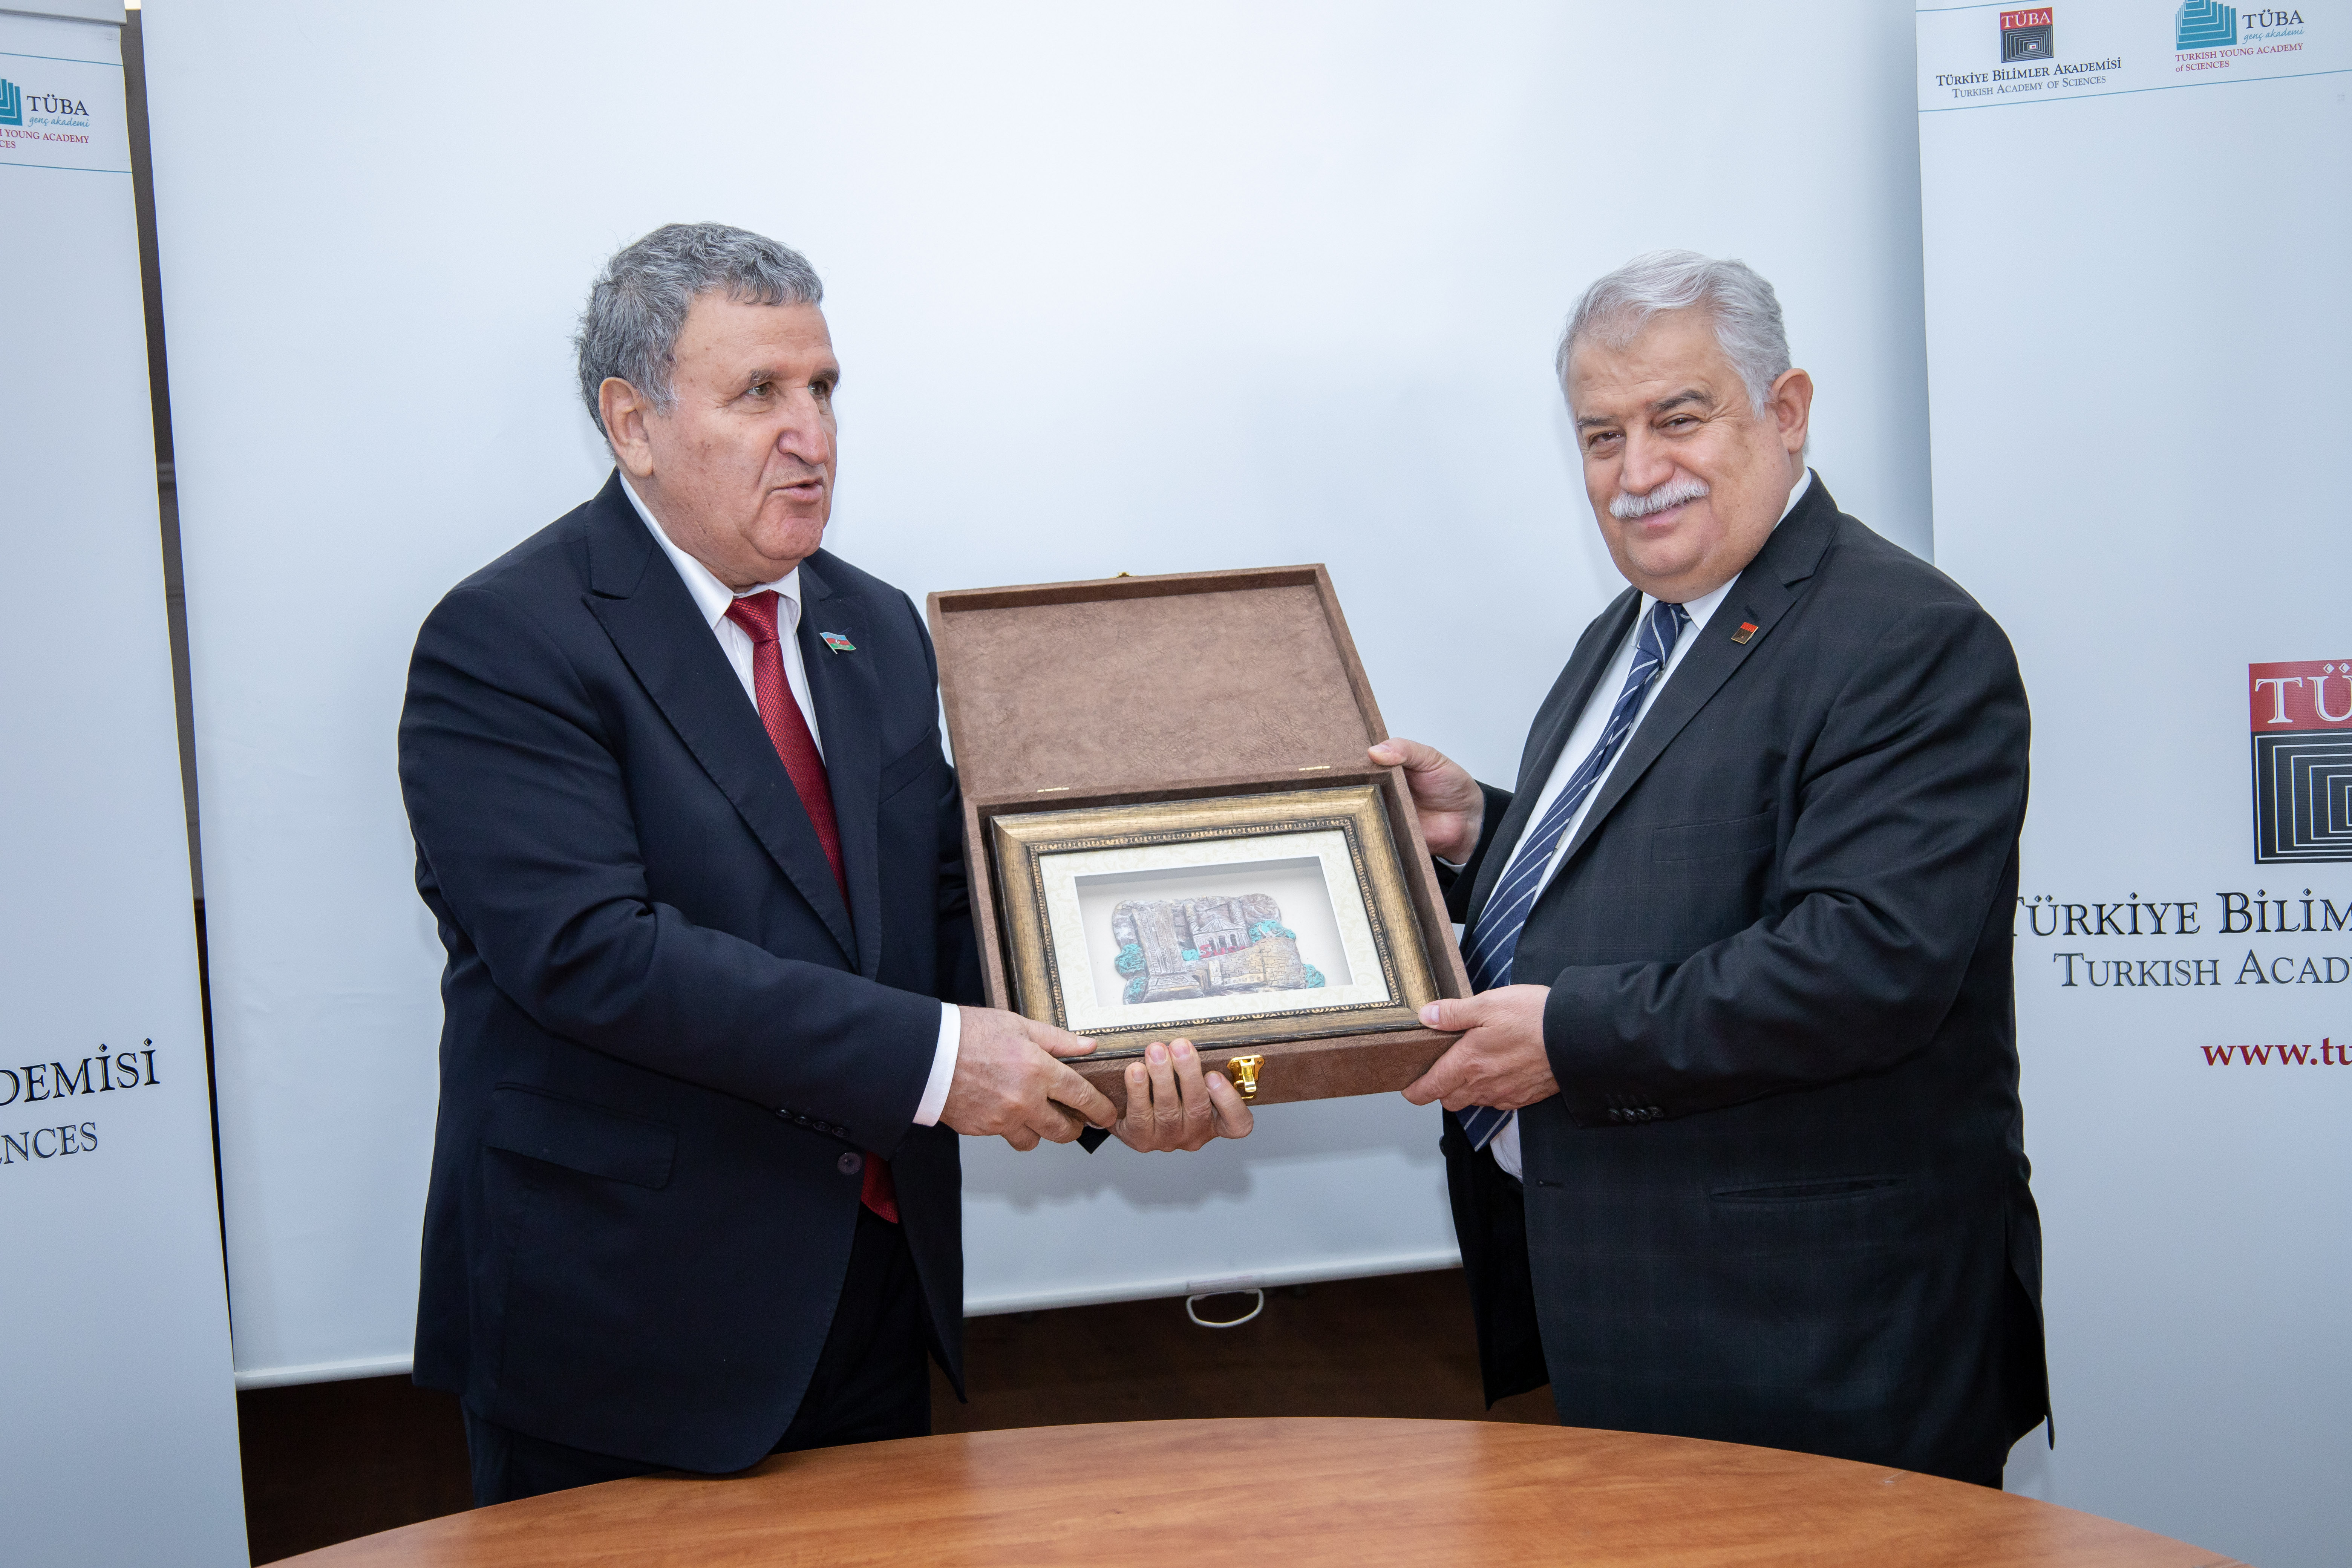 В Анкаре подписан договор о сотрудничестве между НАНА и Академией наук Турции